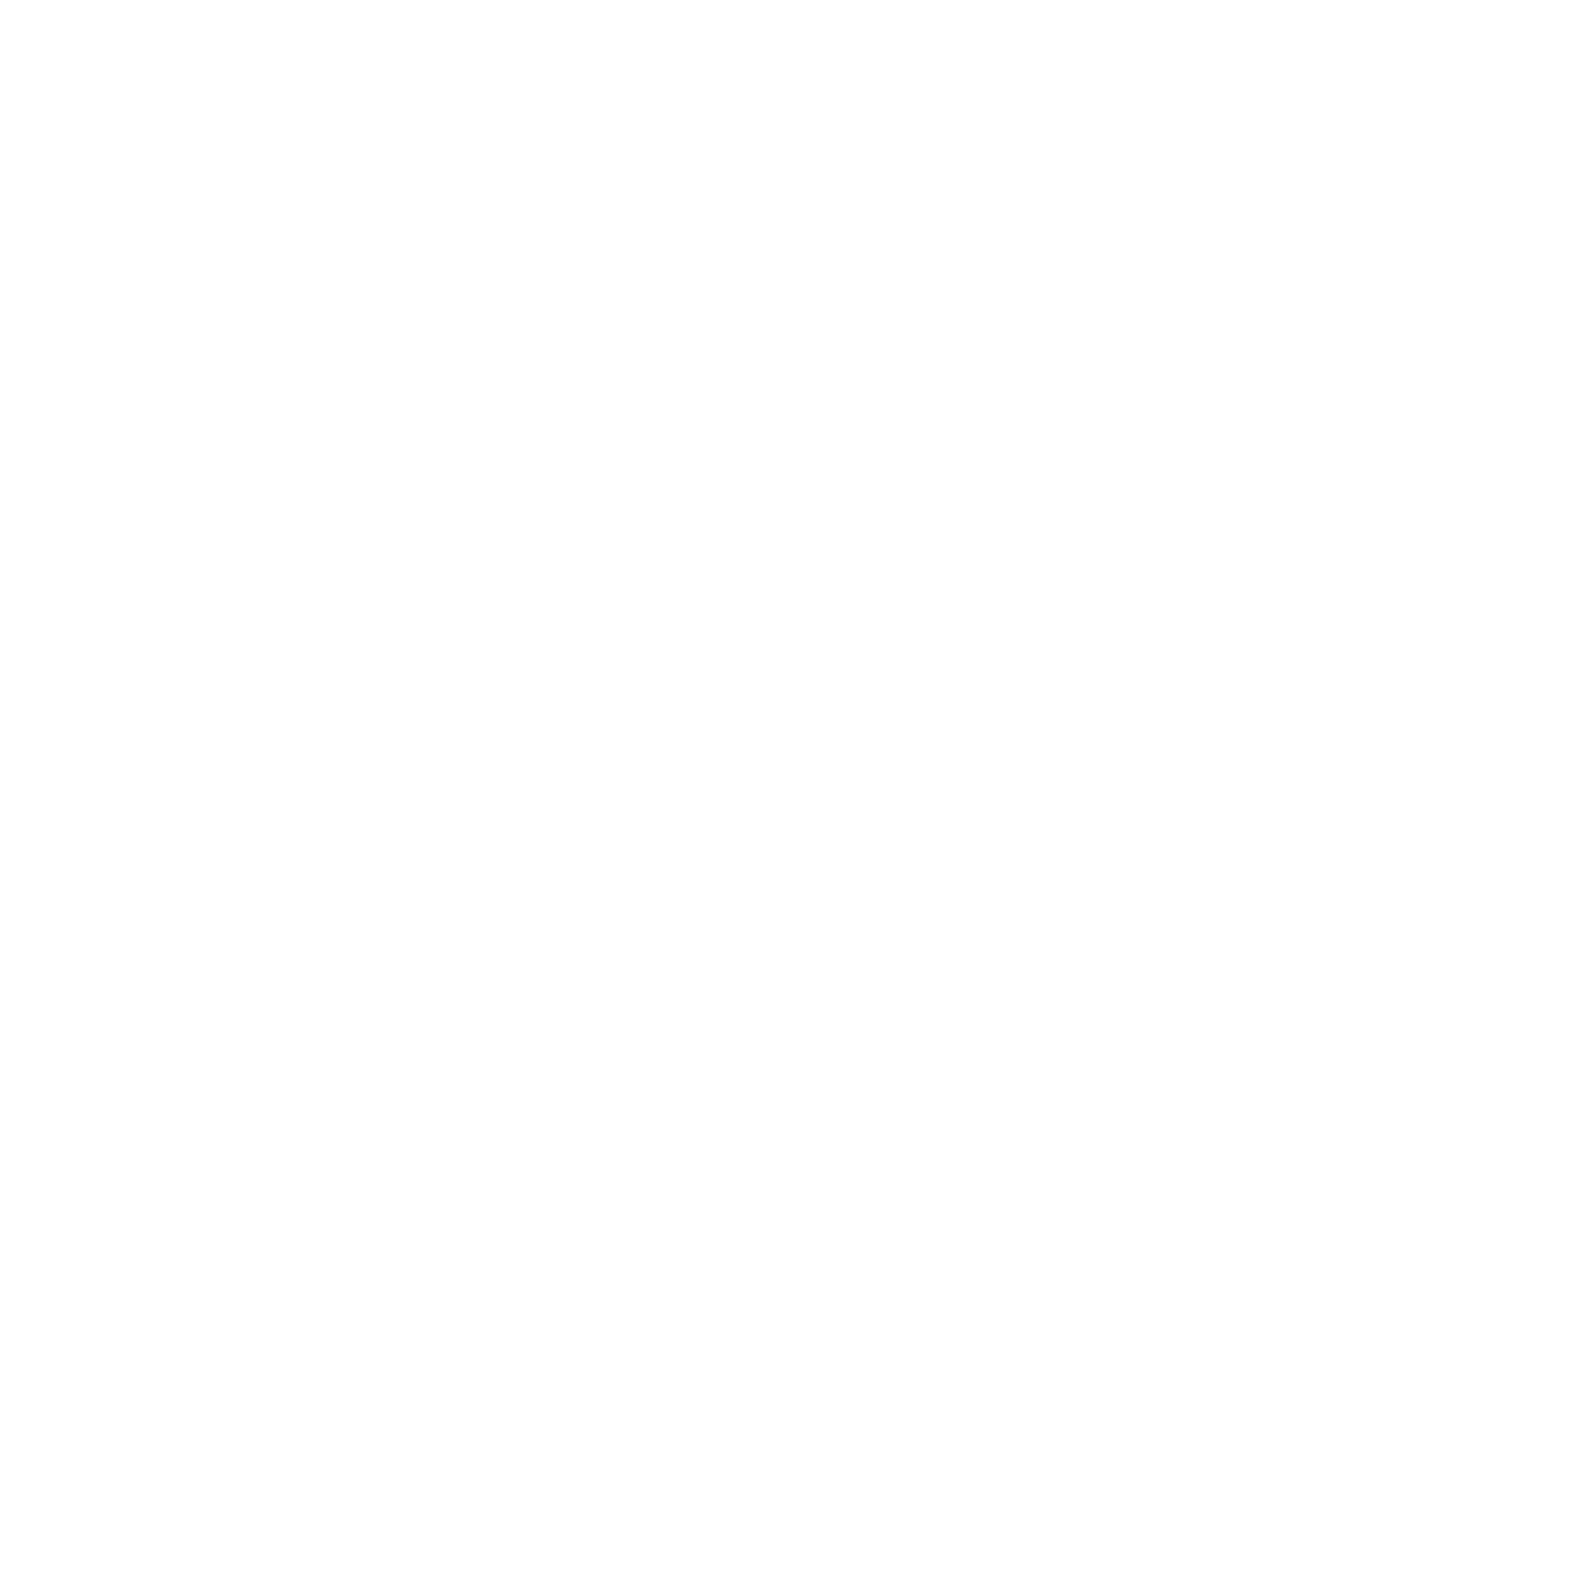 Adecoagro logo pour fonds sombres (PNG transparent)